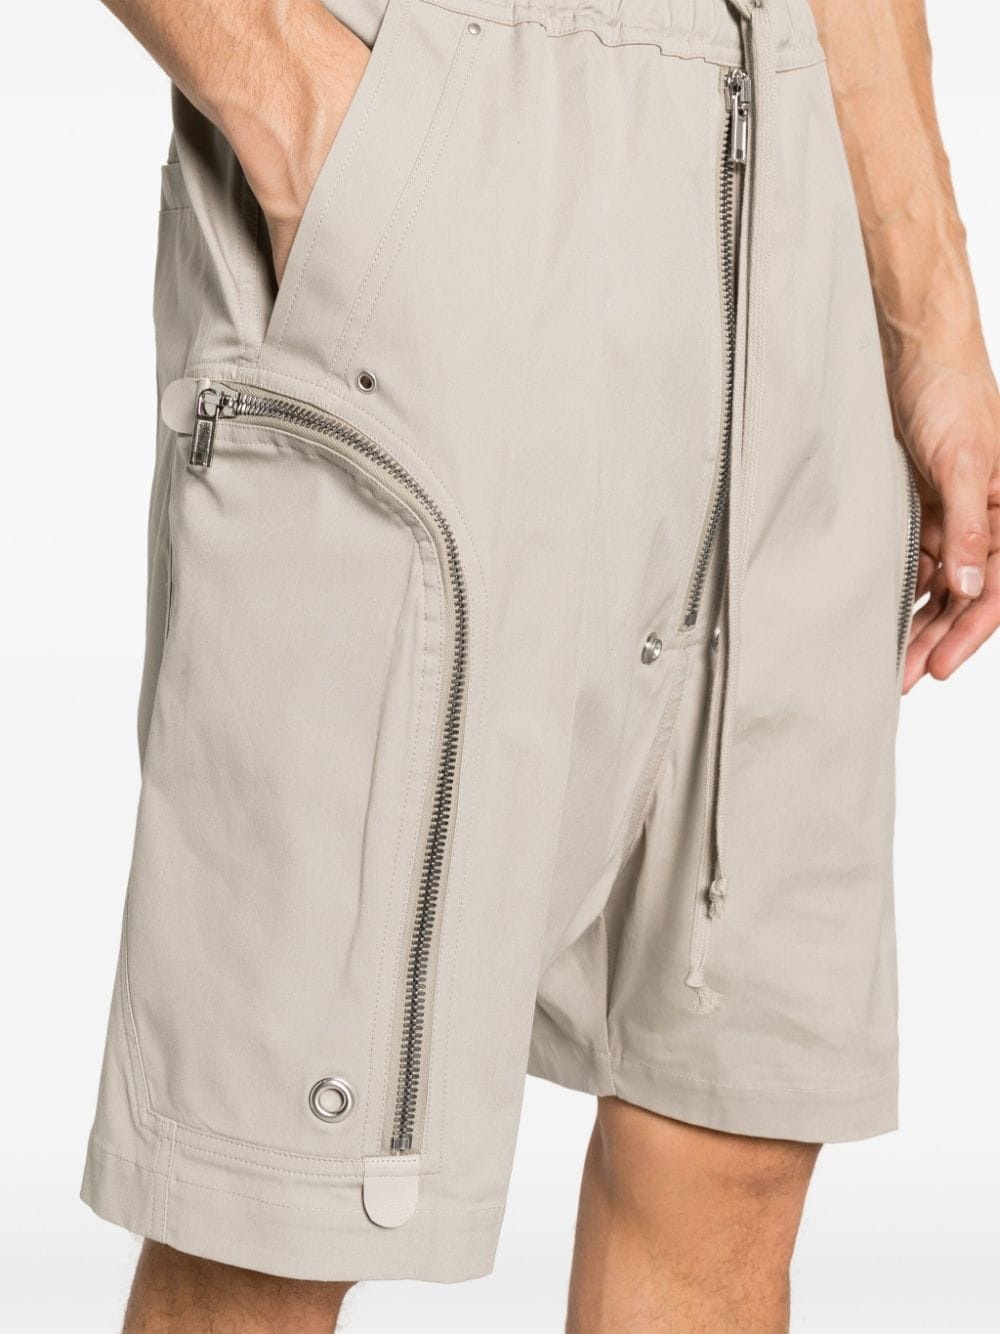 Bauhaus drop-crotch shorts - 5